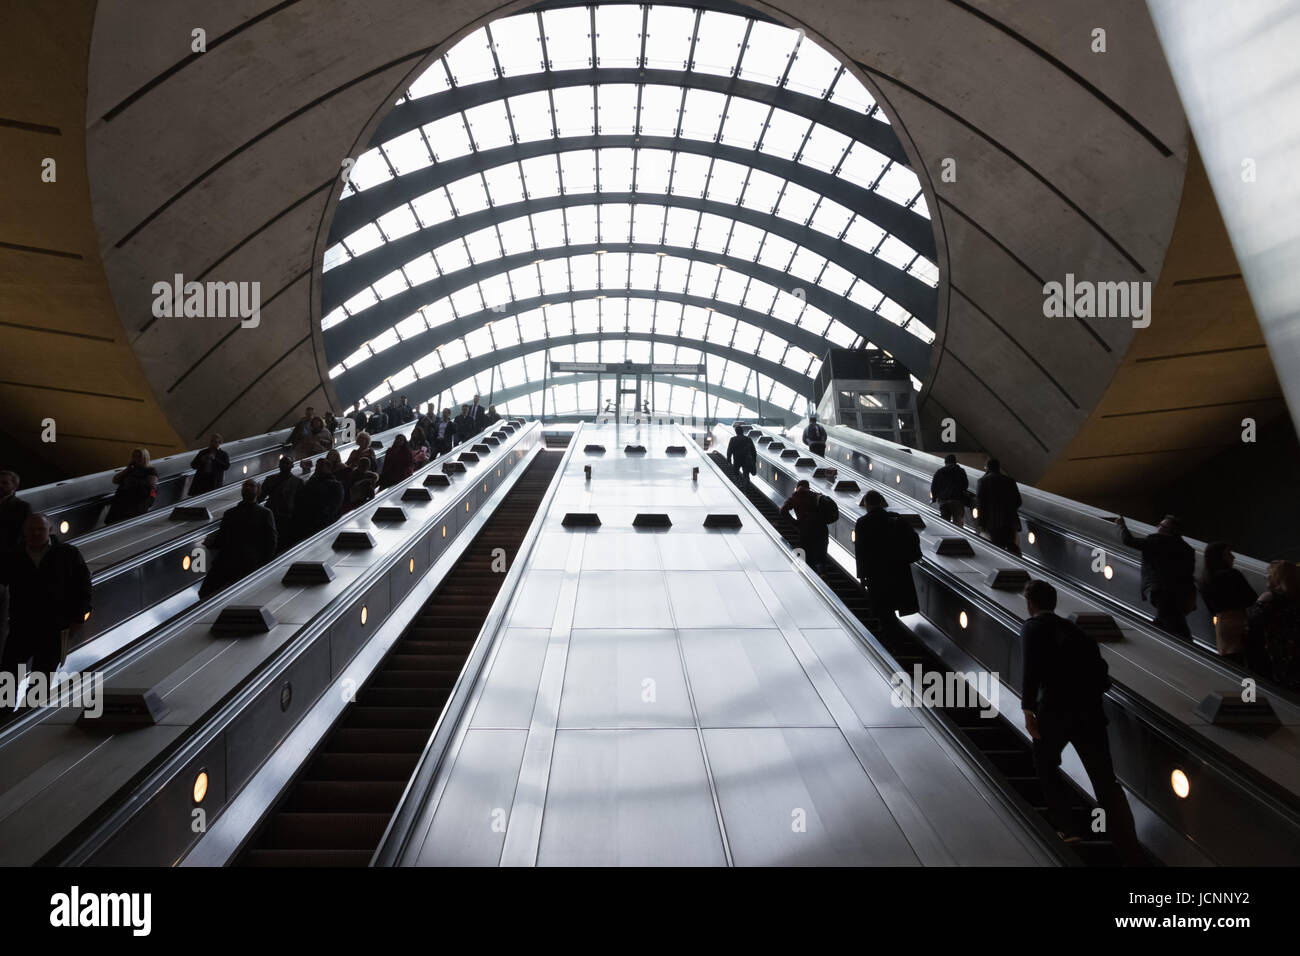 London, UK - 27. März 2017: Canary Wharf u-Bahnstation während der Rush Hour mit vielen Pendler Stockfoto